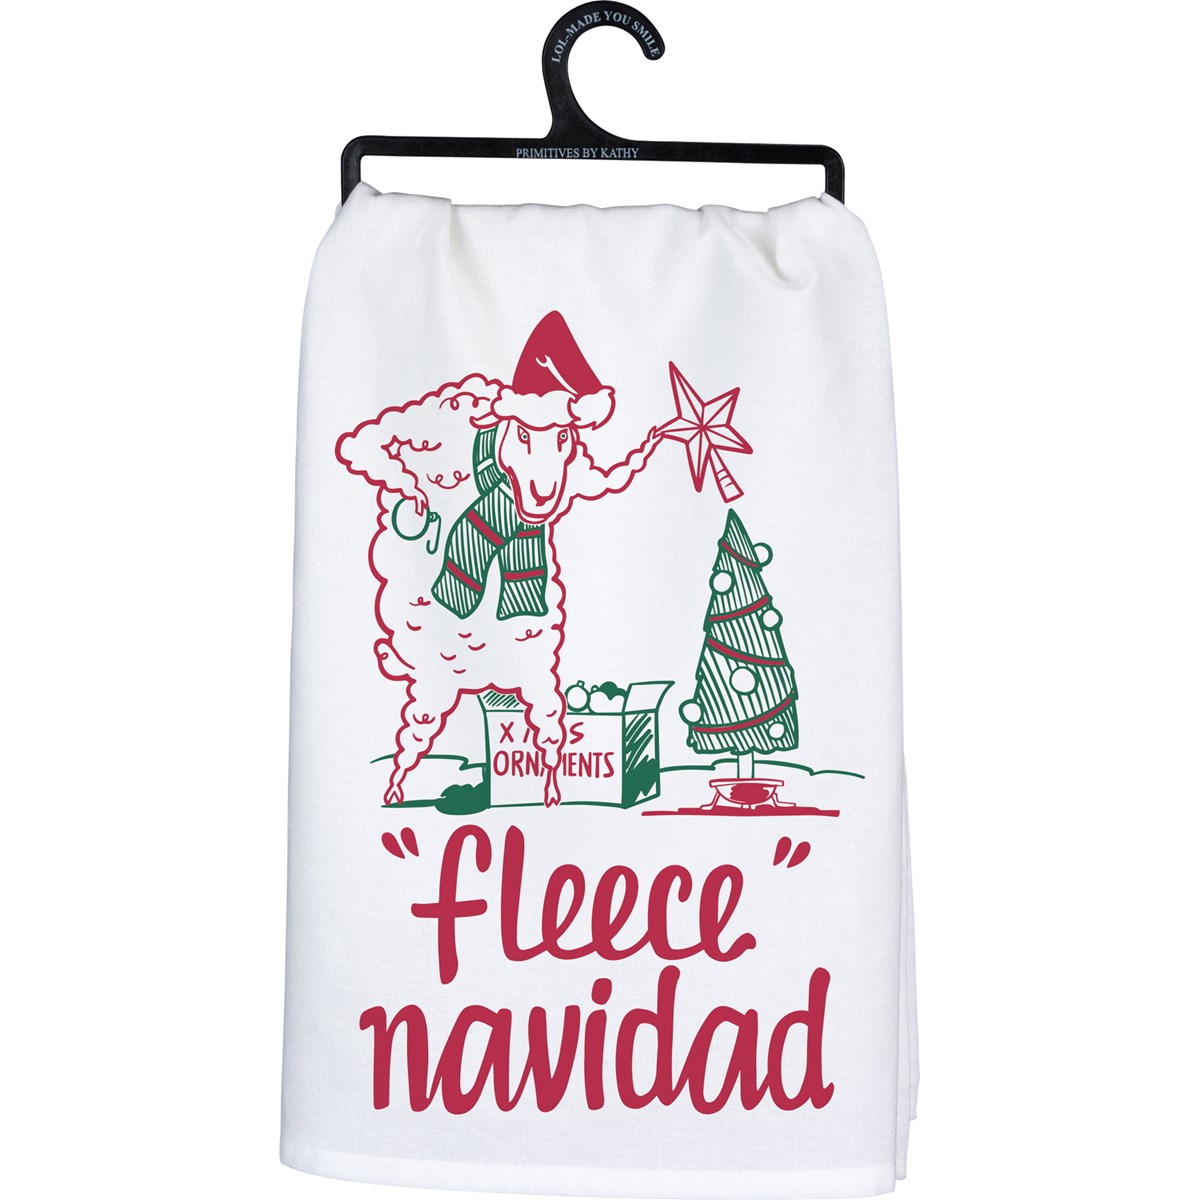 Fleece Navidad Kitchen Towel - Cotton